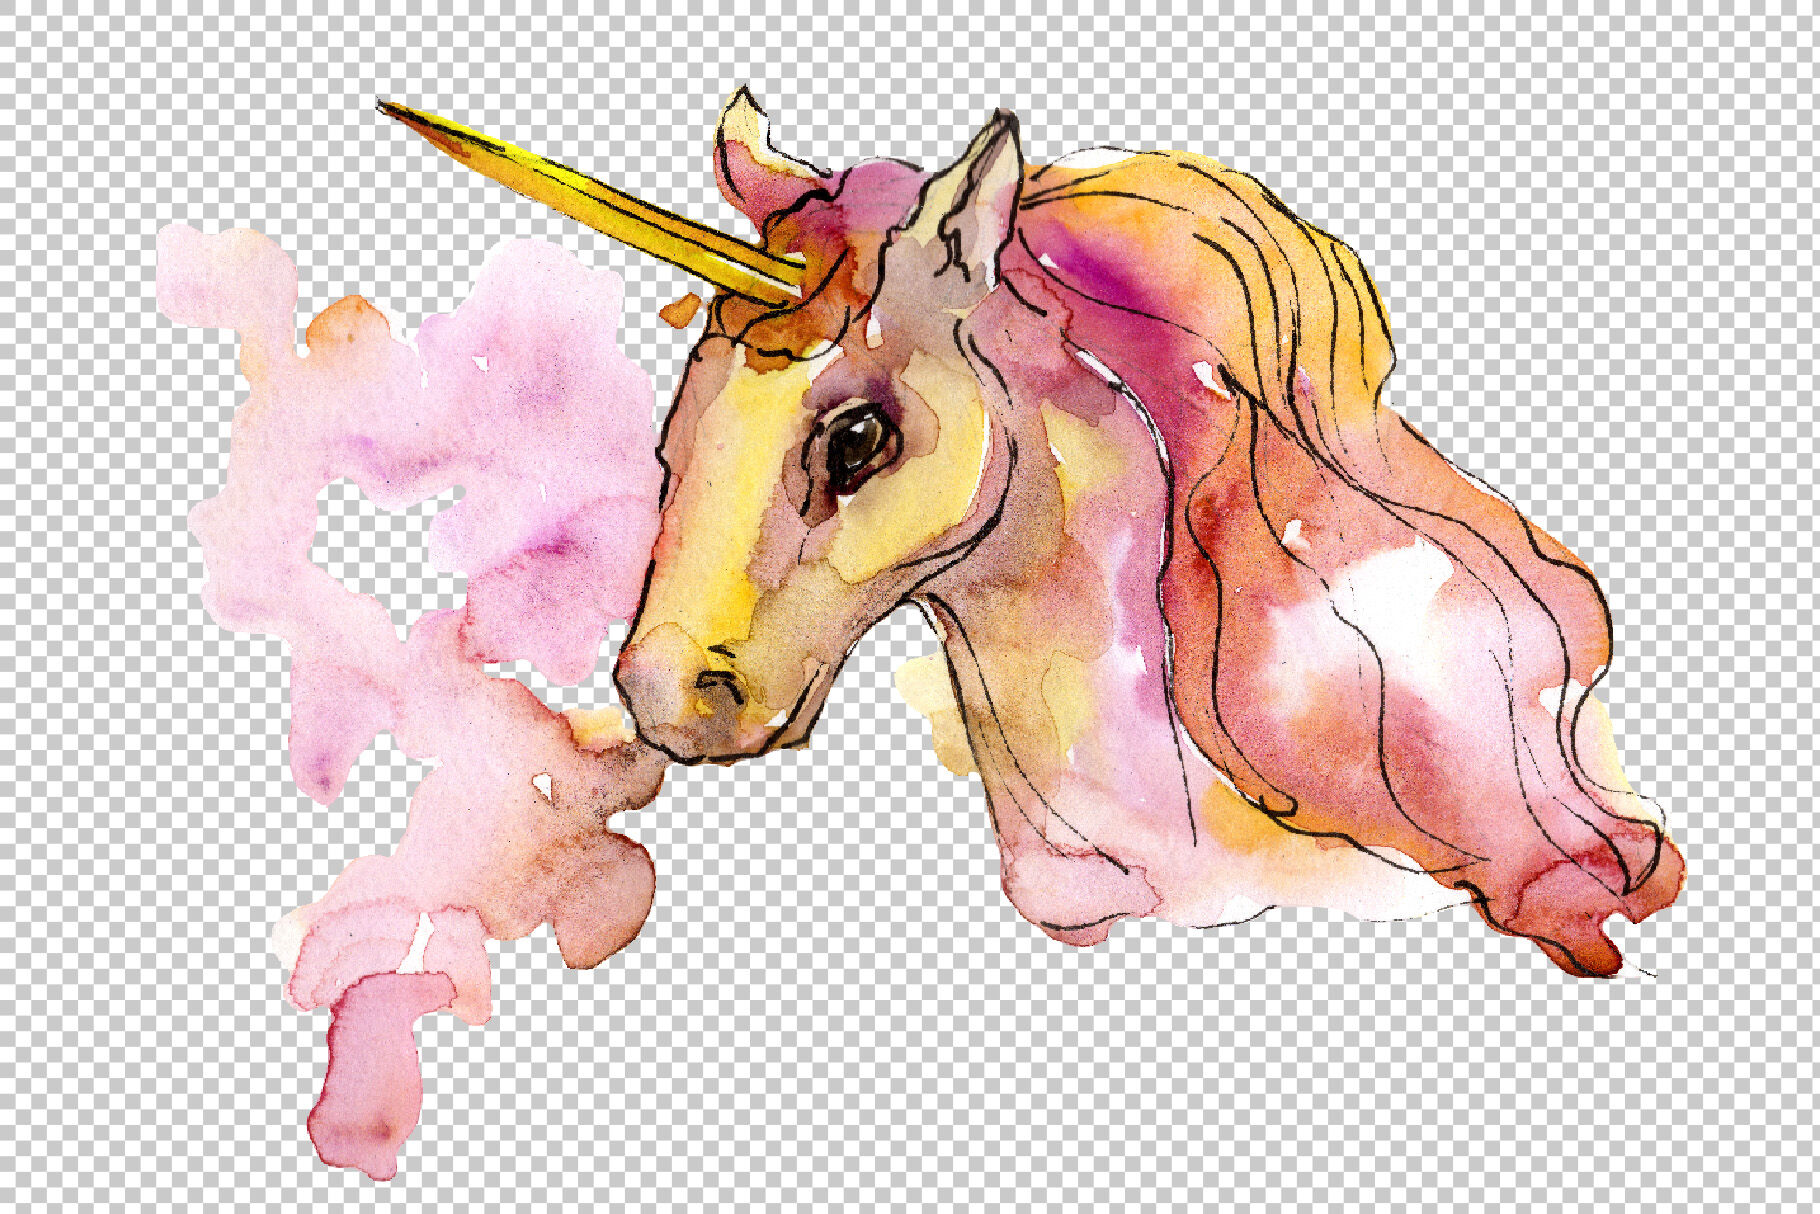 Colorful watercolor unicorn.